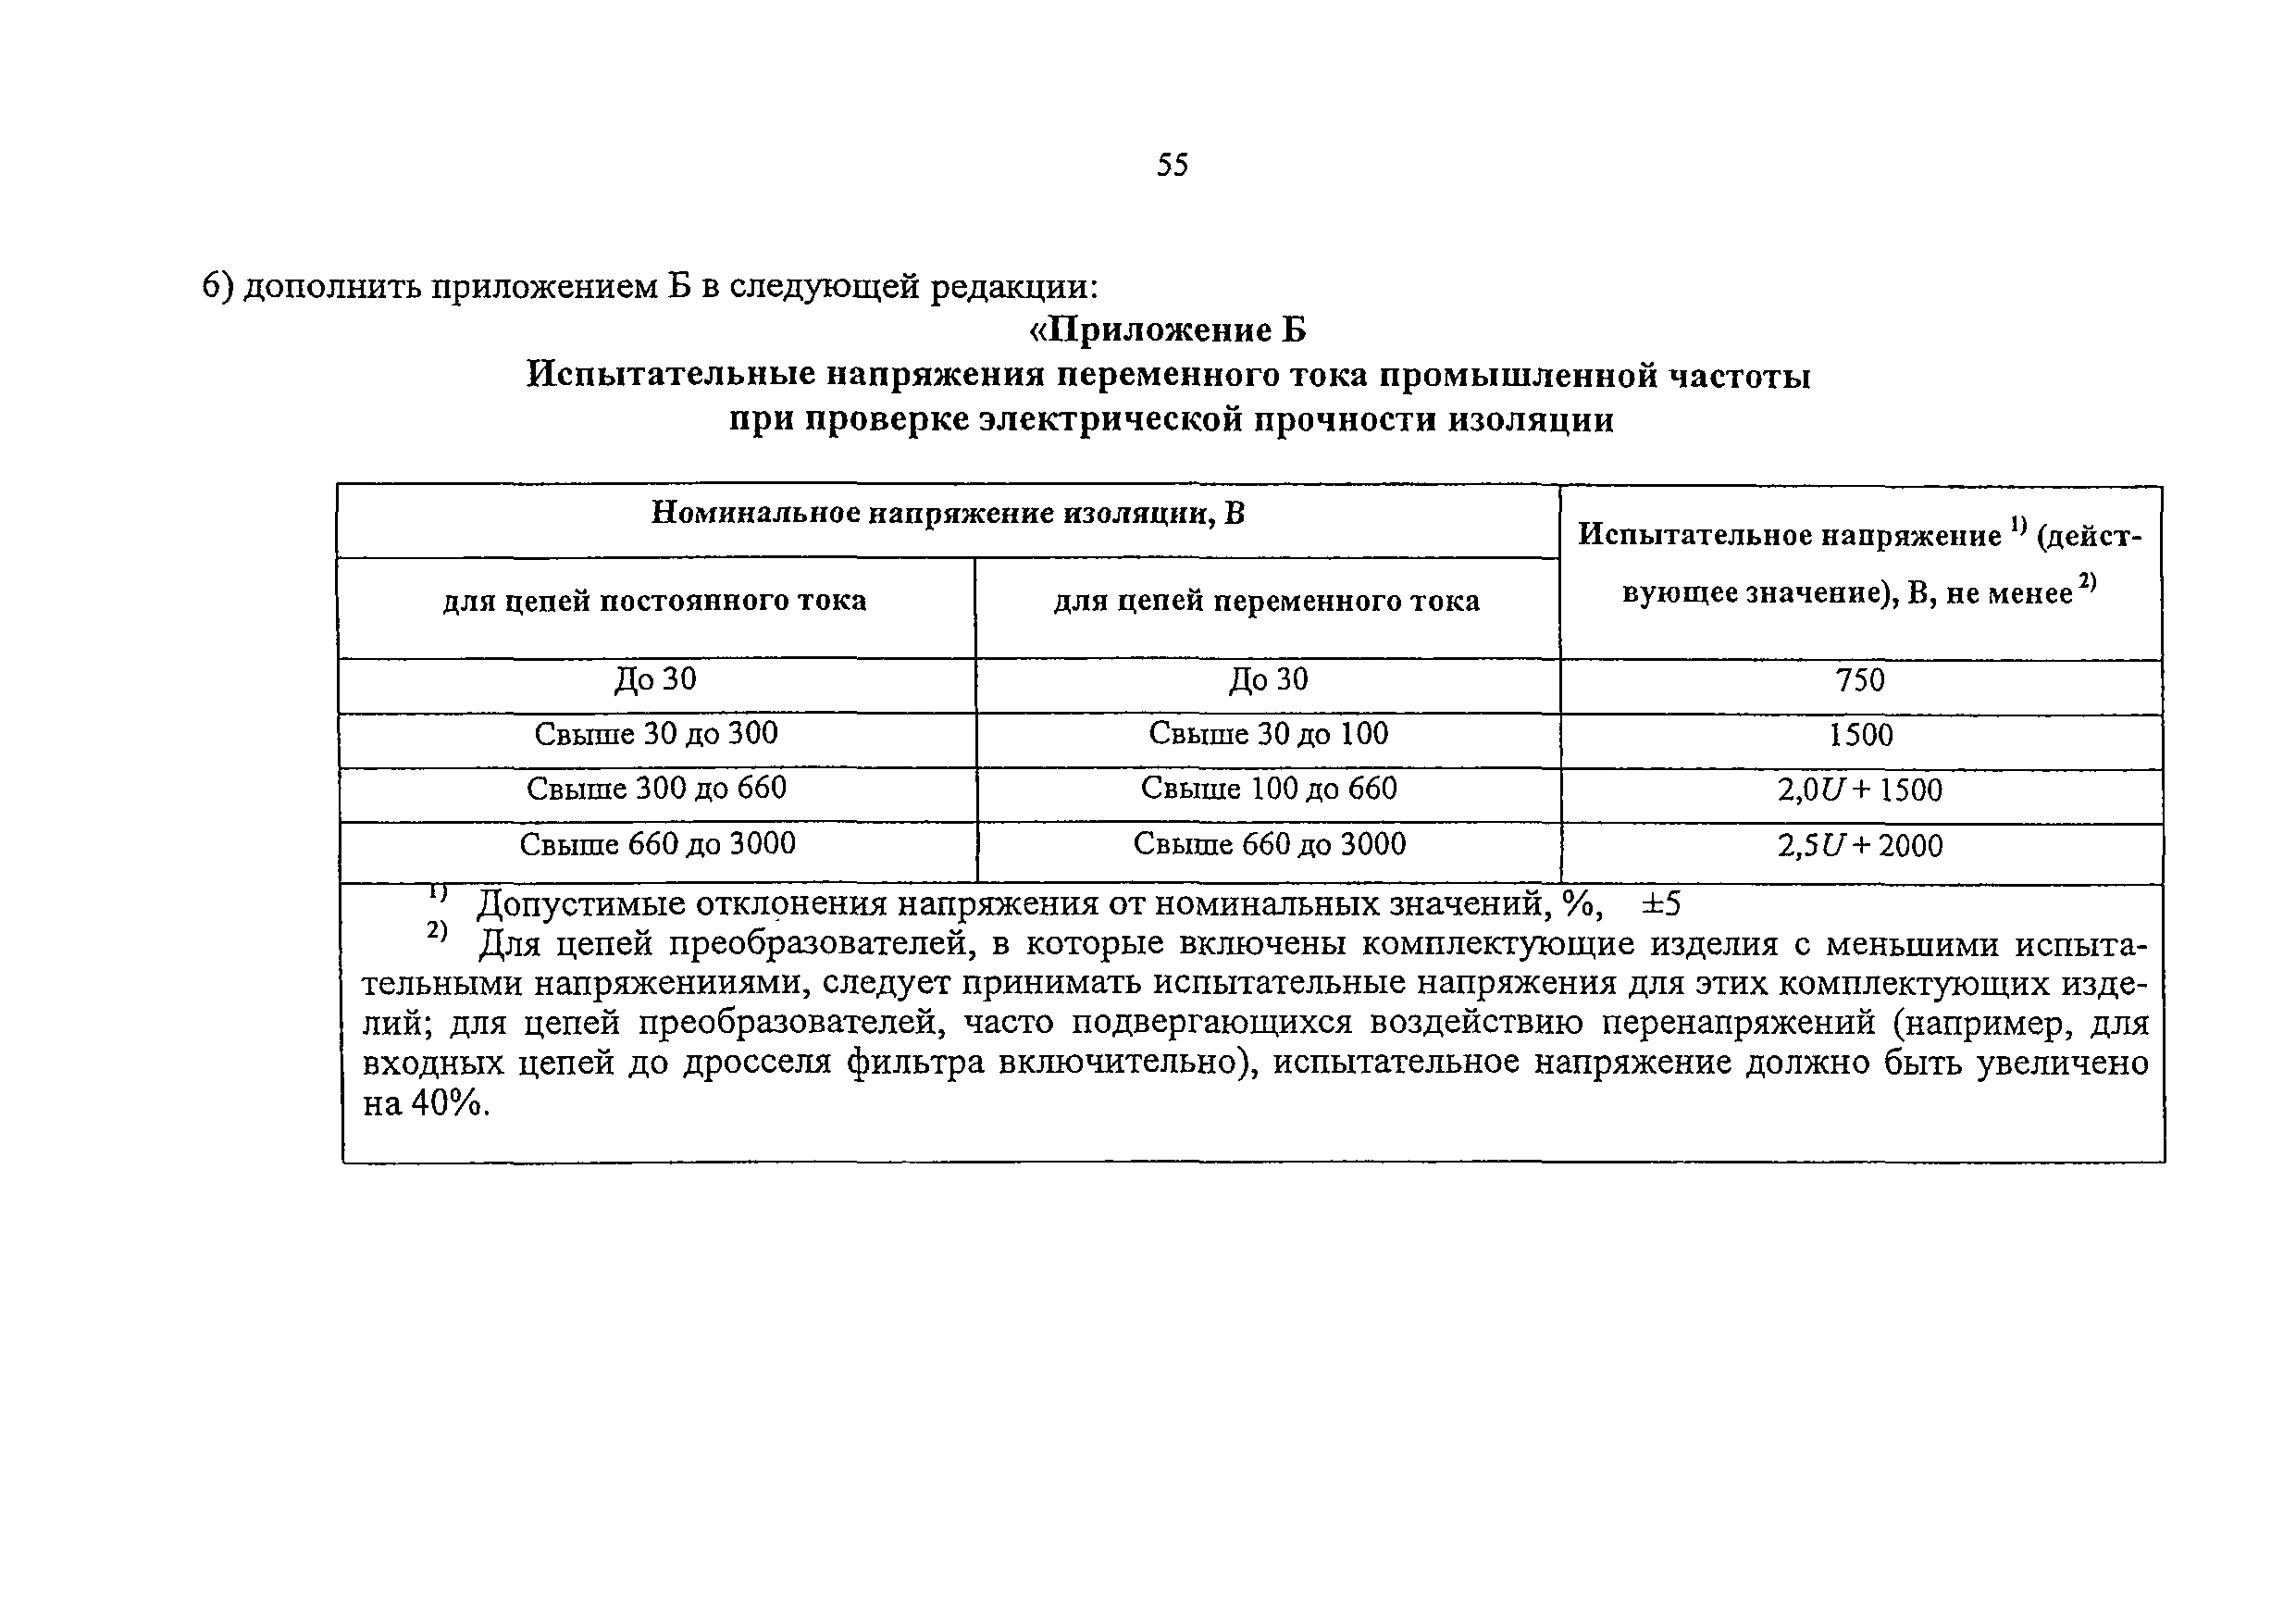 НБ ЖТ ЦЛ-ЦТ 139-2003